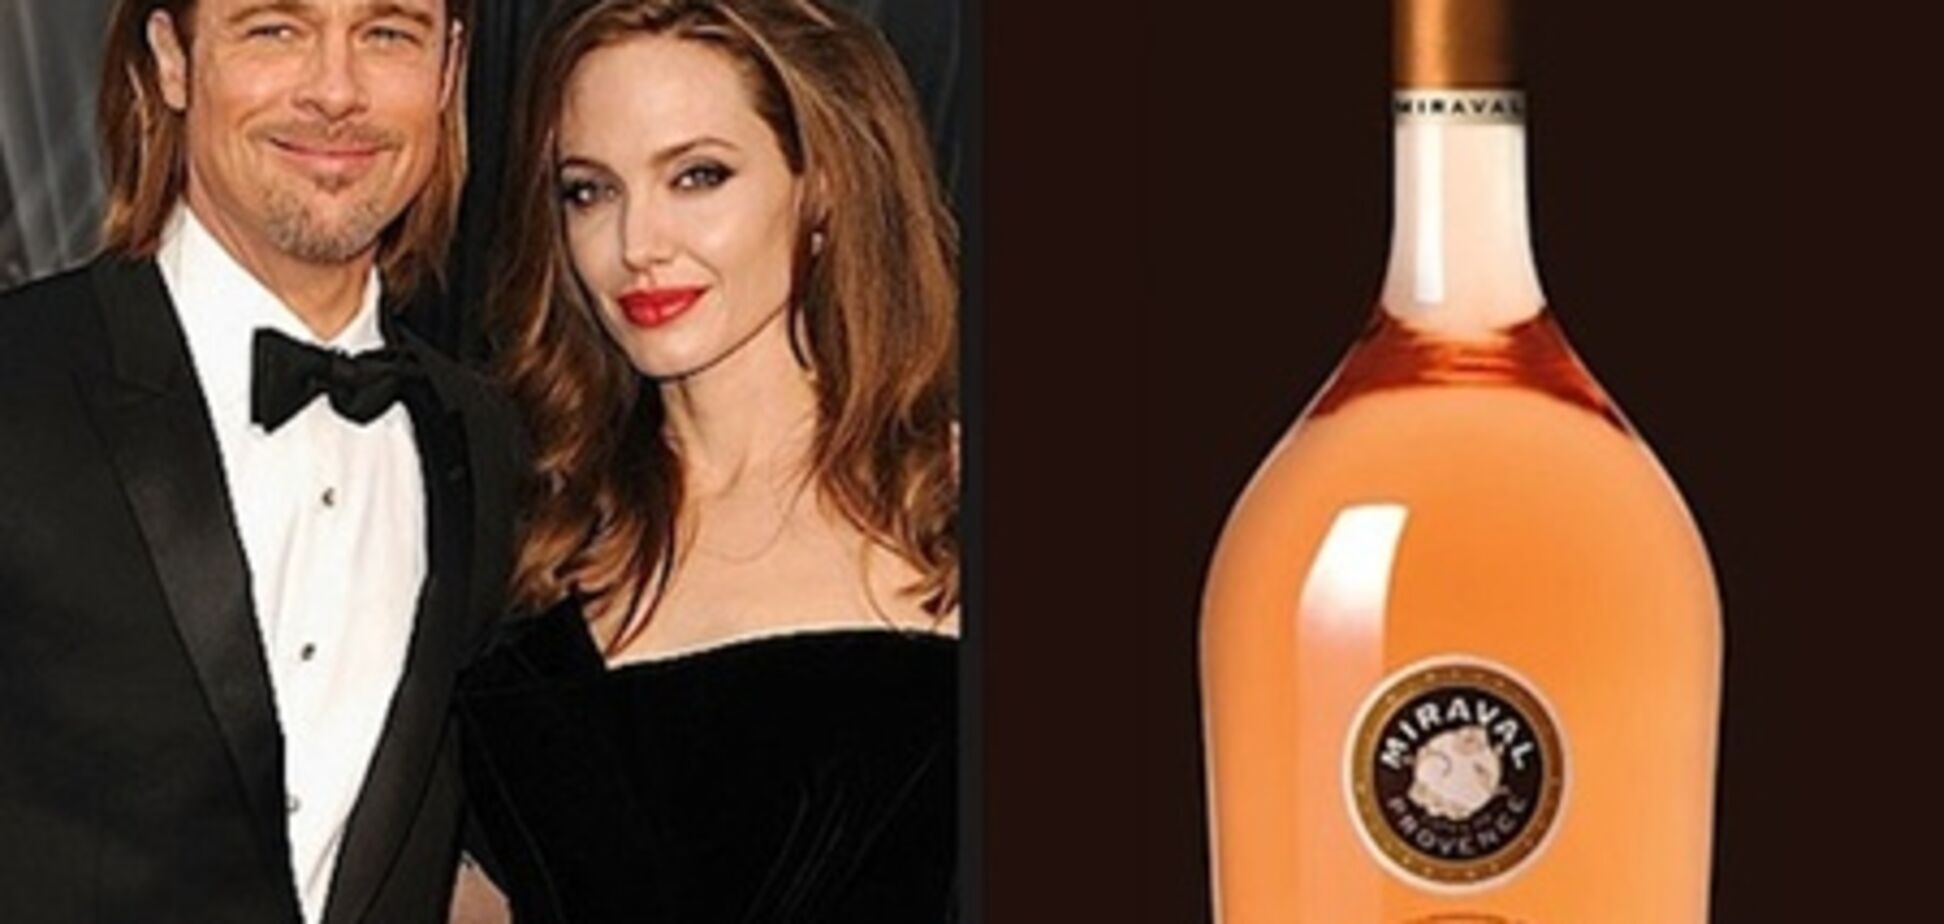 Вино, произведенное Питтом и Джоли, продано в интернете за 5 часов